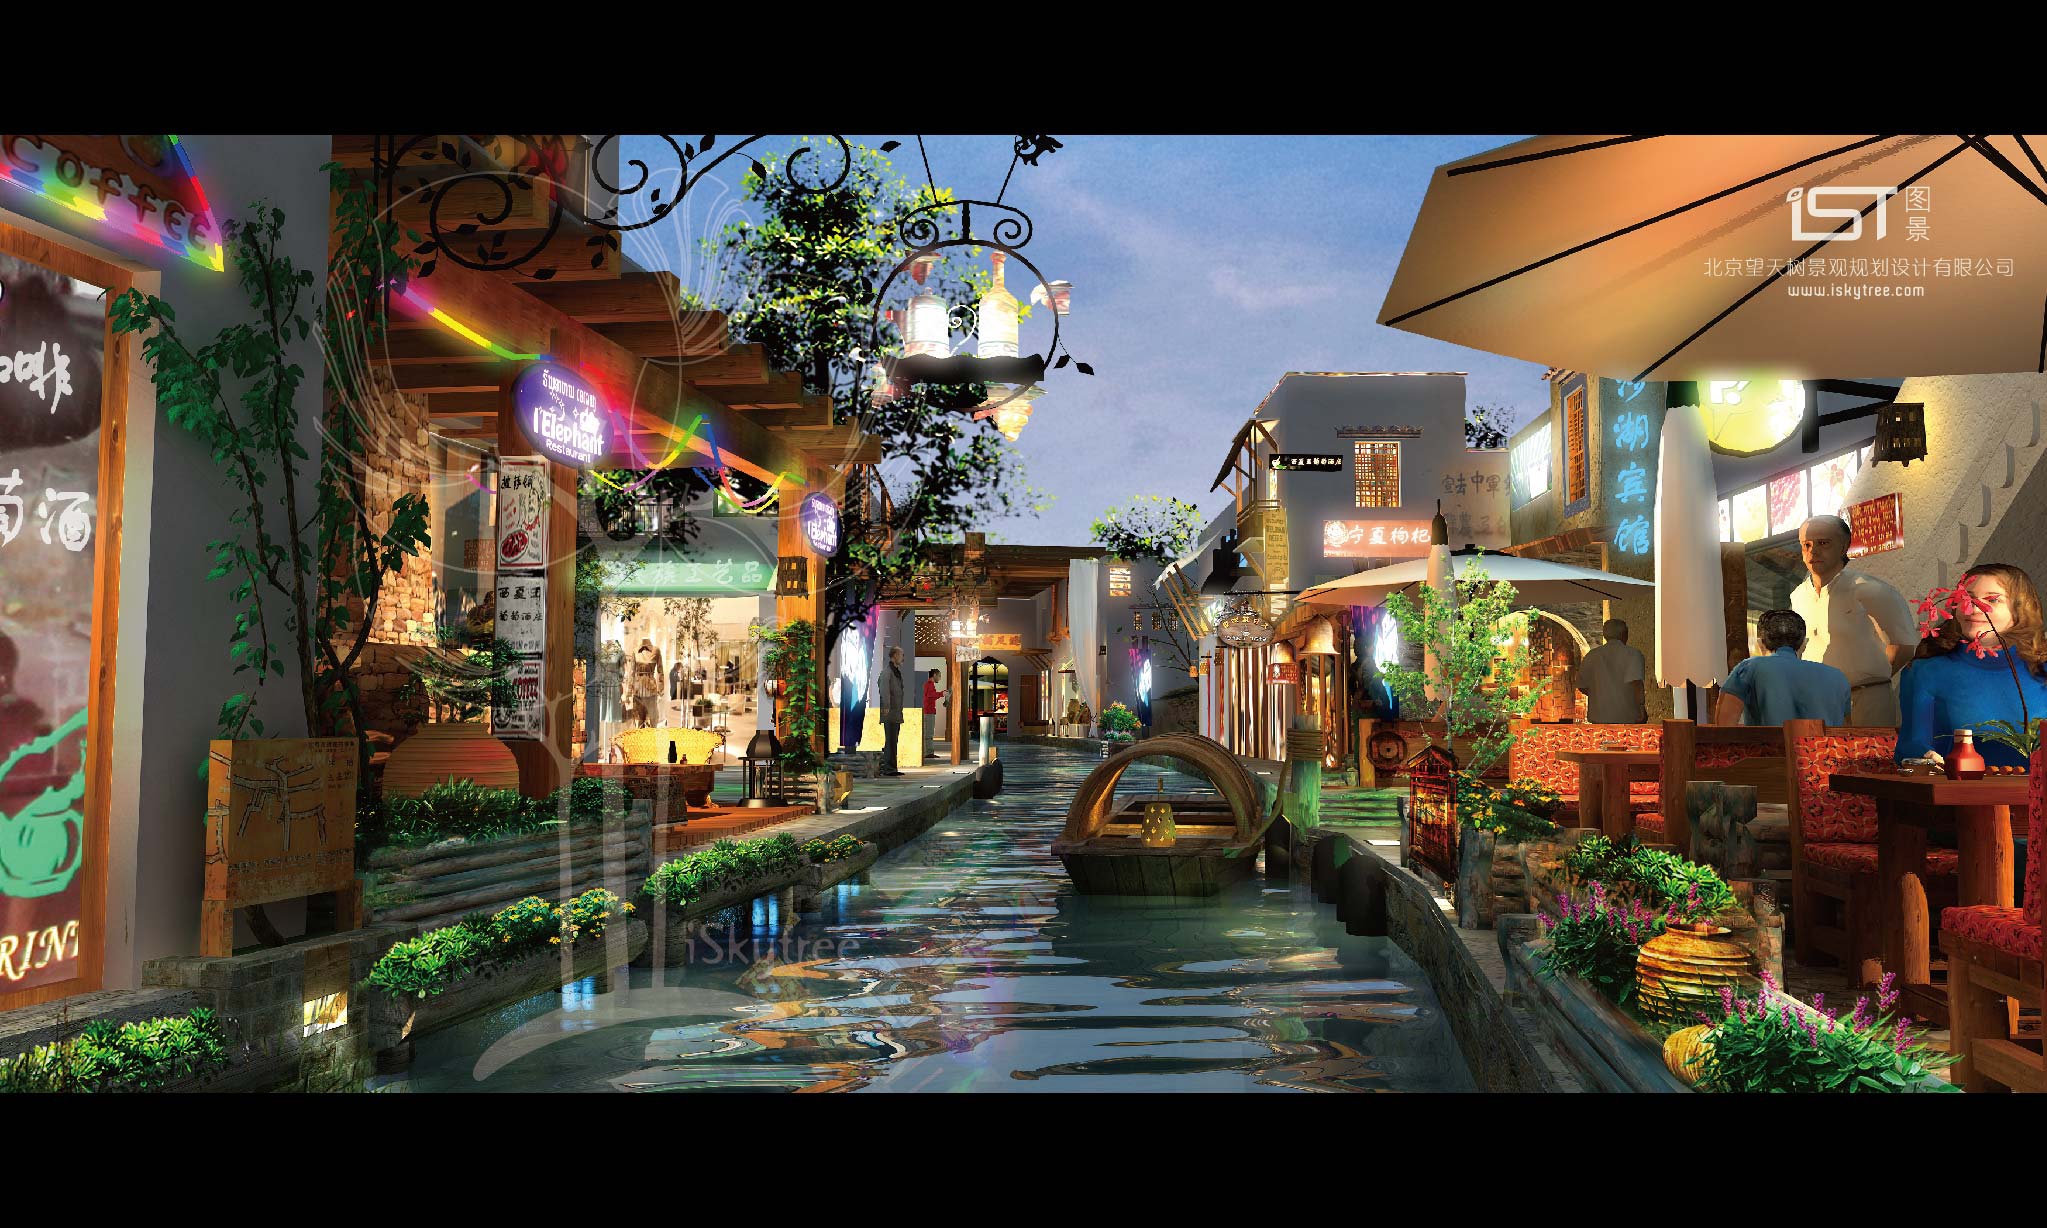 沙湖风情小镇水街设计方案夜景效果表现